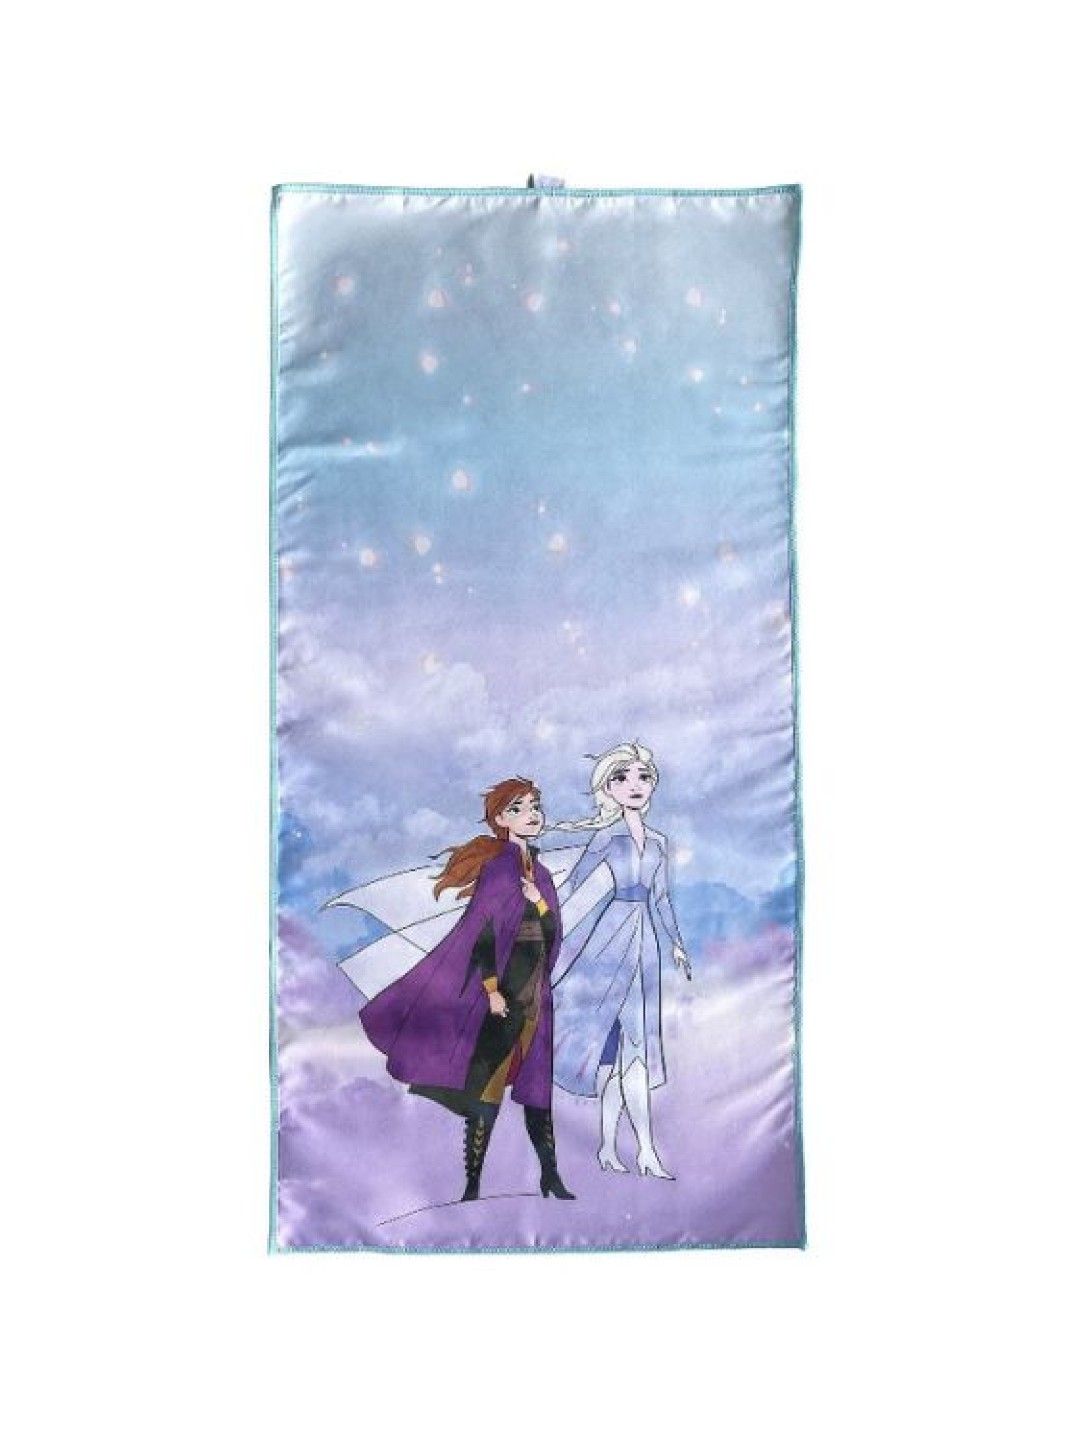 Totsafe Disney Quick Dry Microfiber Towels - Frozen (Elsa and Anna)